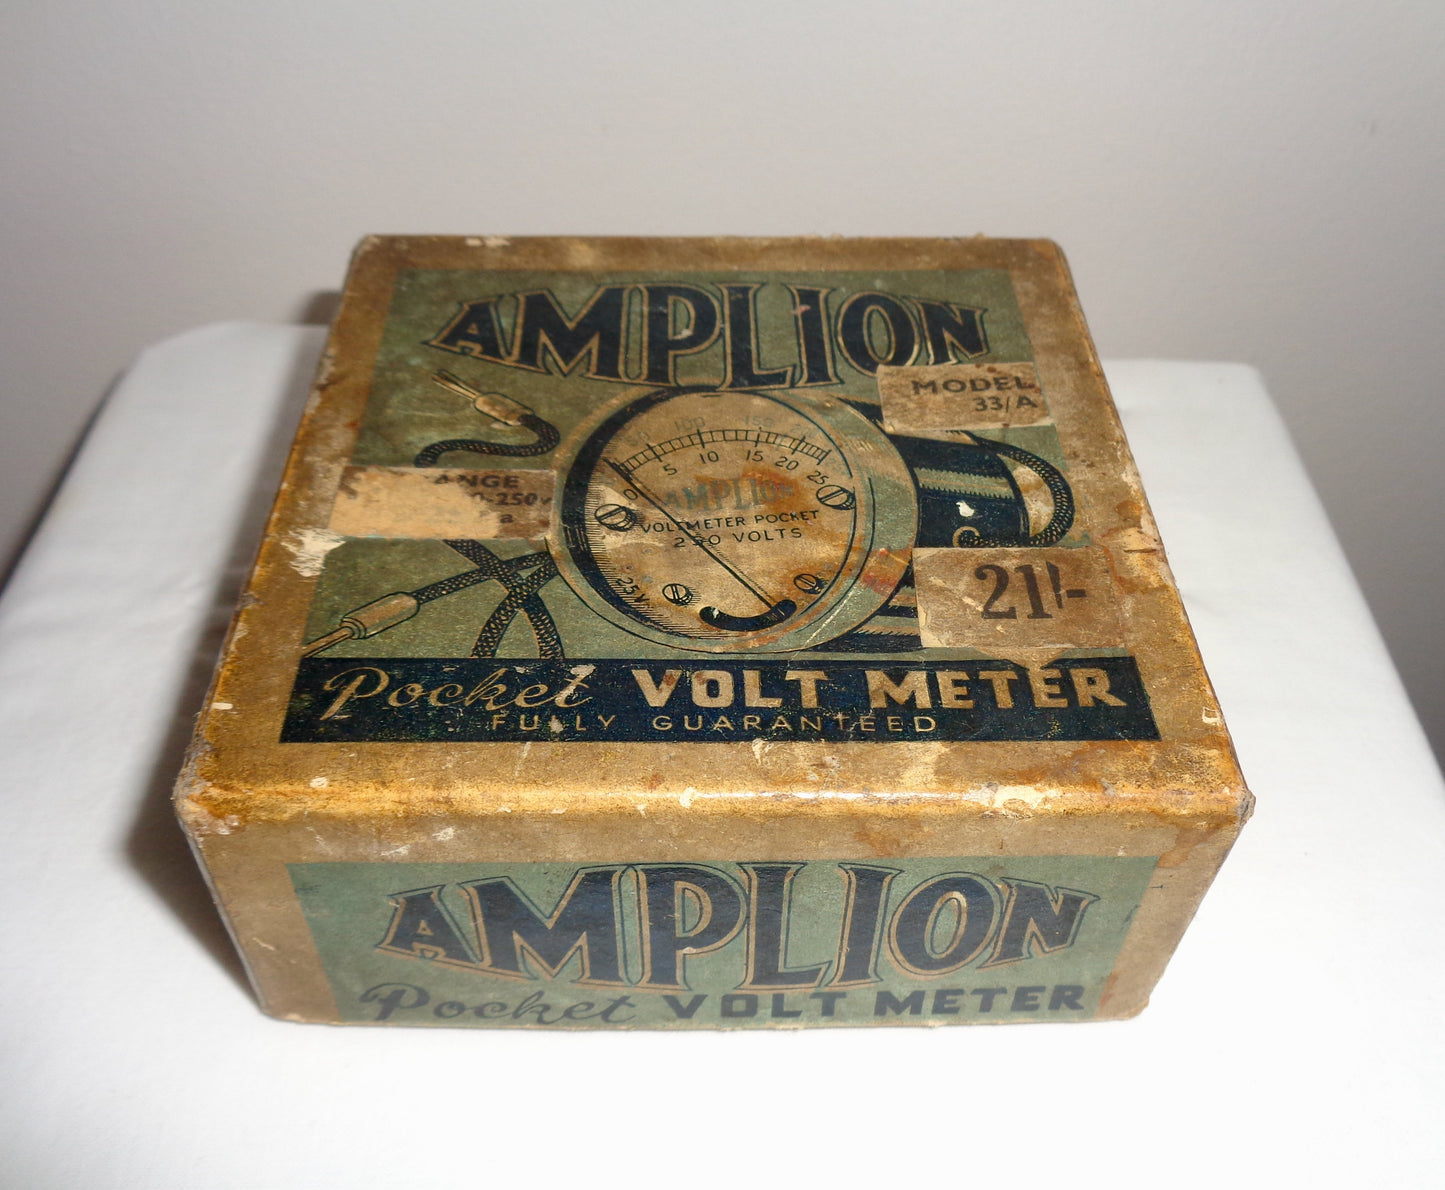 Vintage Amplion Pocket Volt meter Model 33A